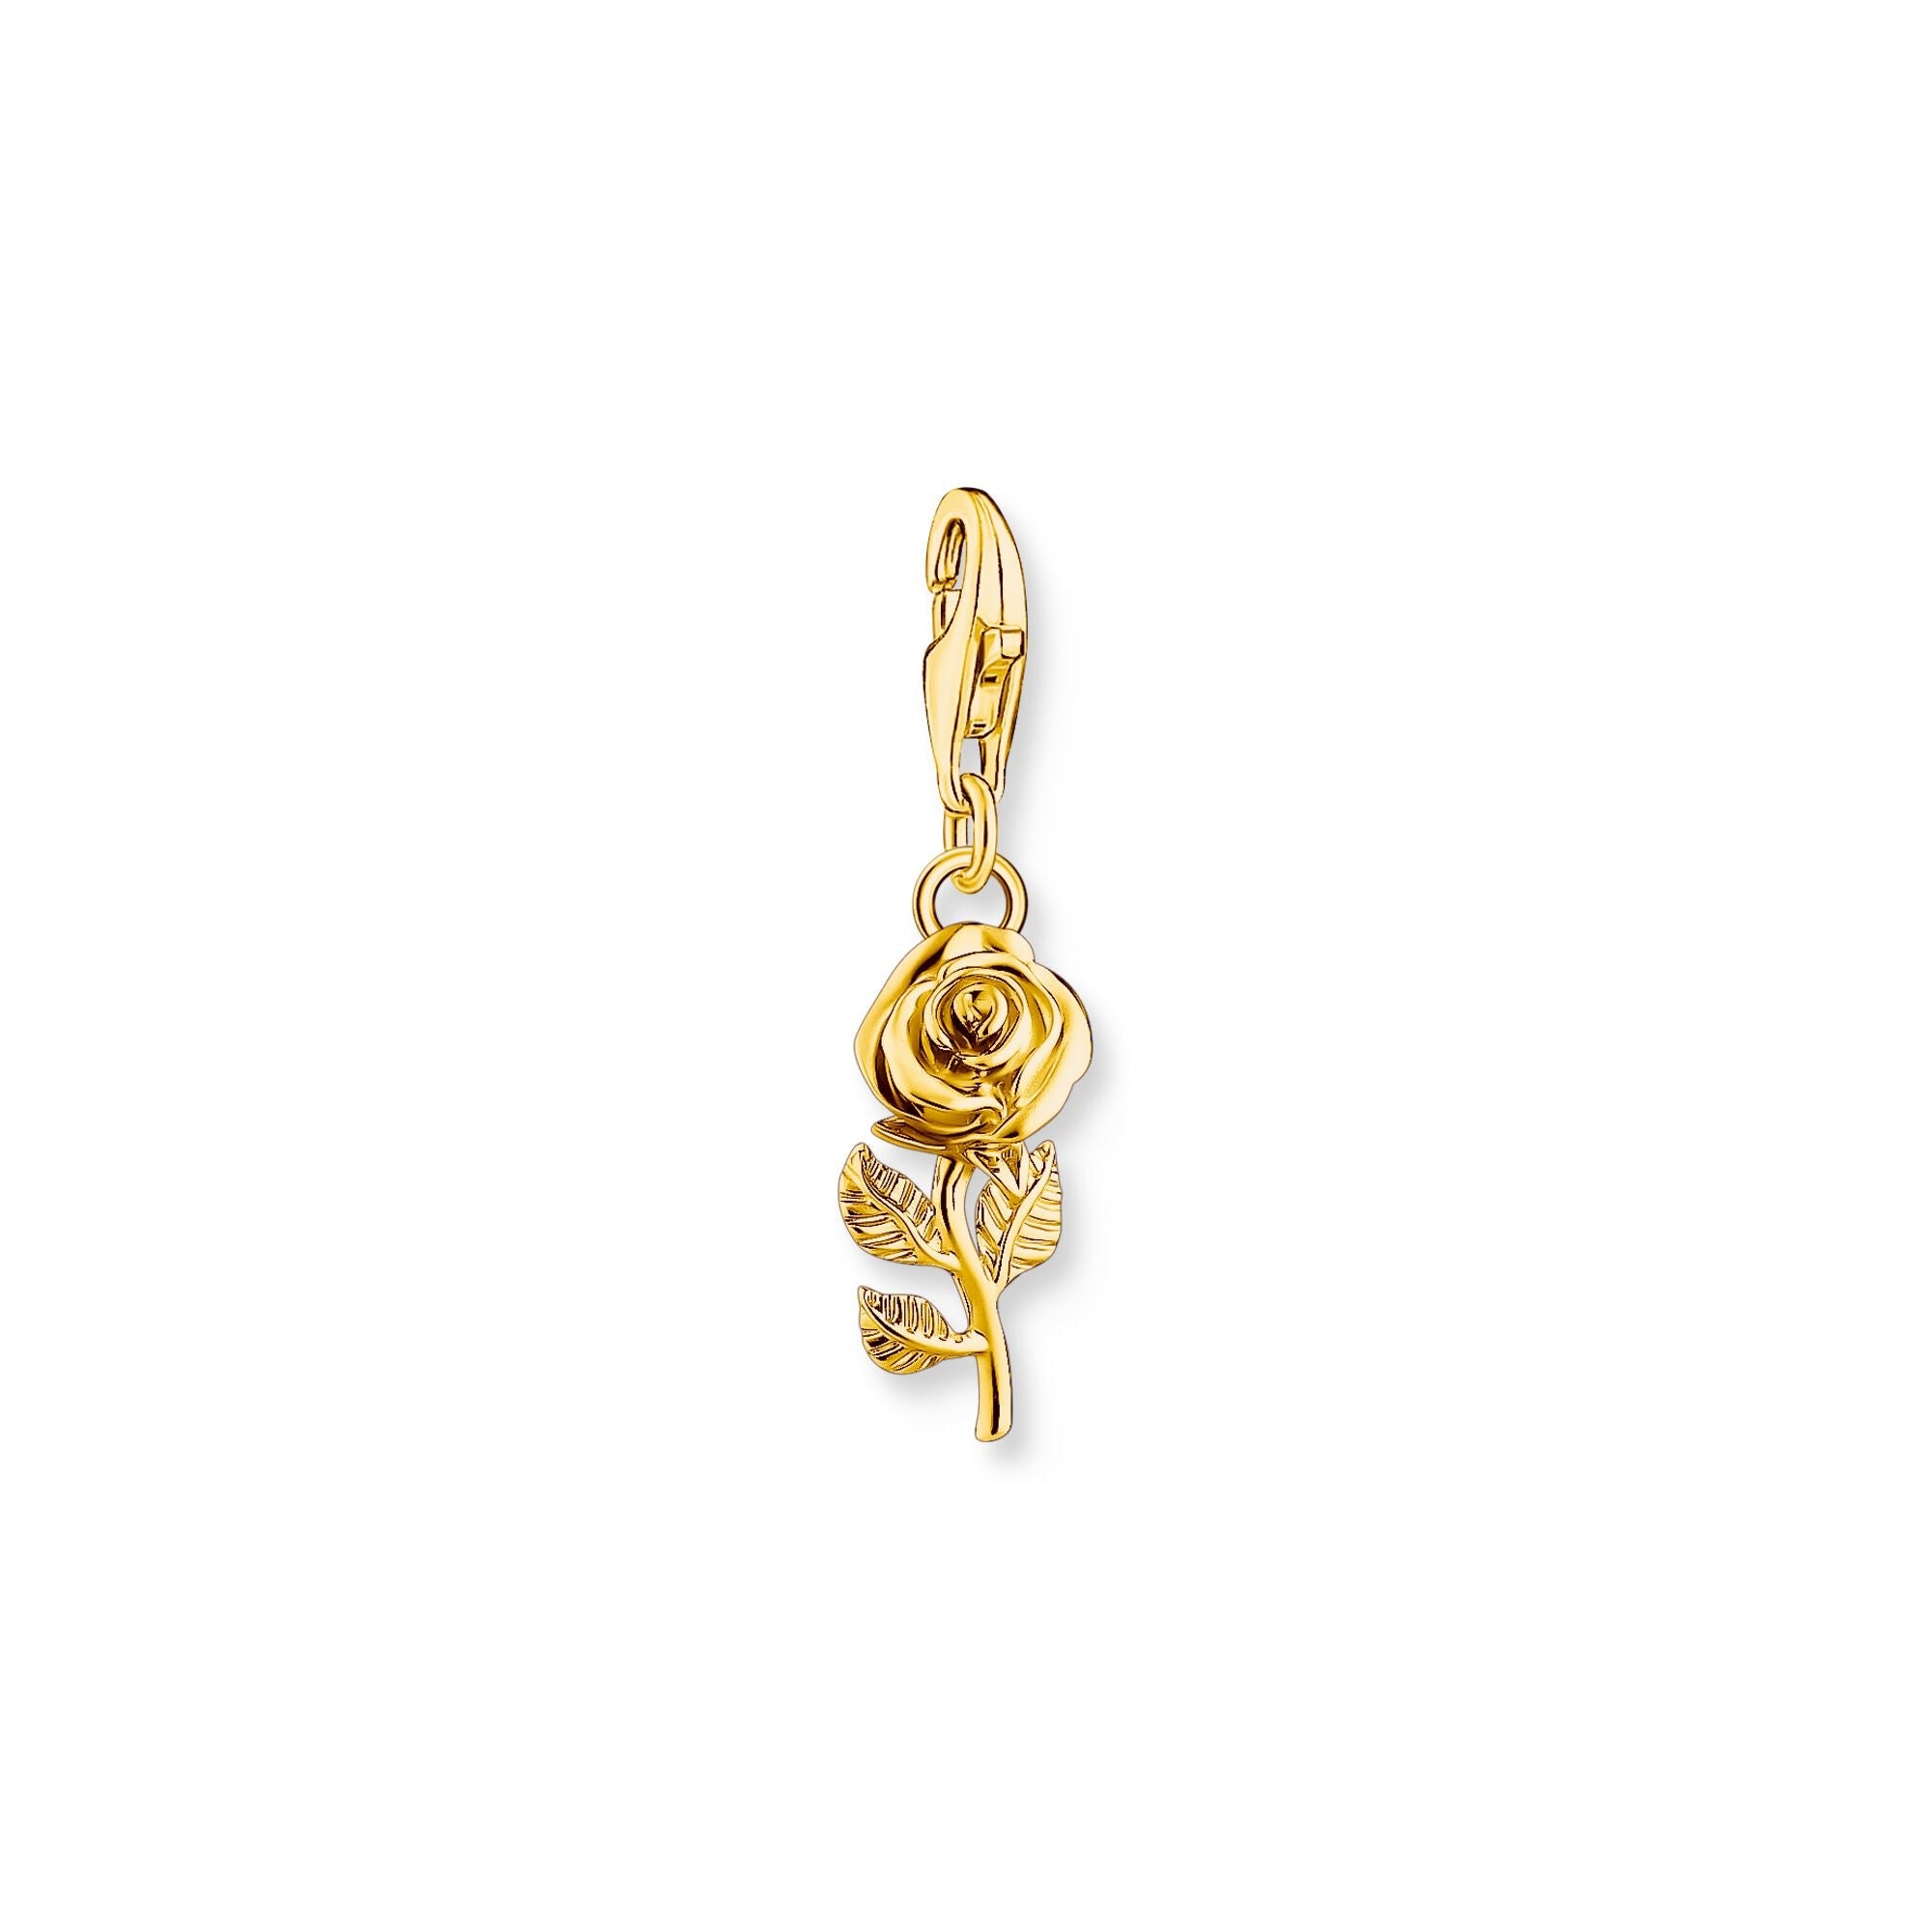 Buy Rose charm Pendant gold by Thomas Sabo online - THOMAS SABO Australia